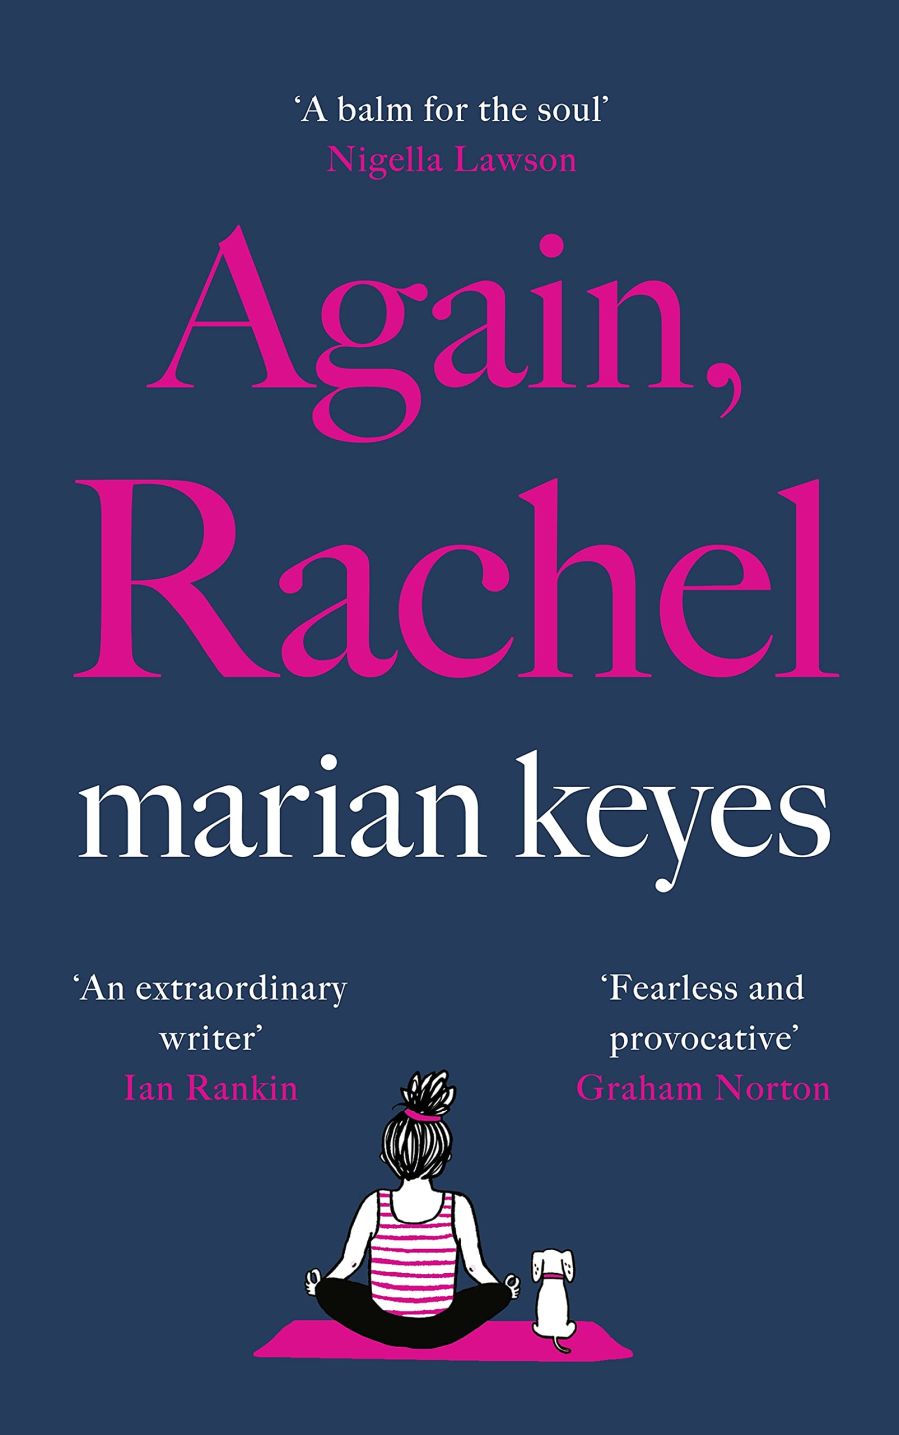 Cover of Again, Rachel by Marian Keyes.